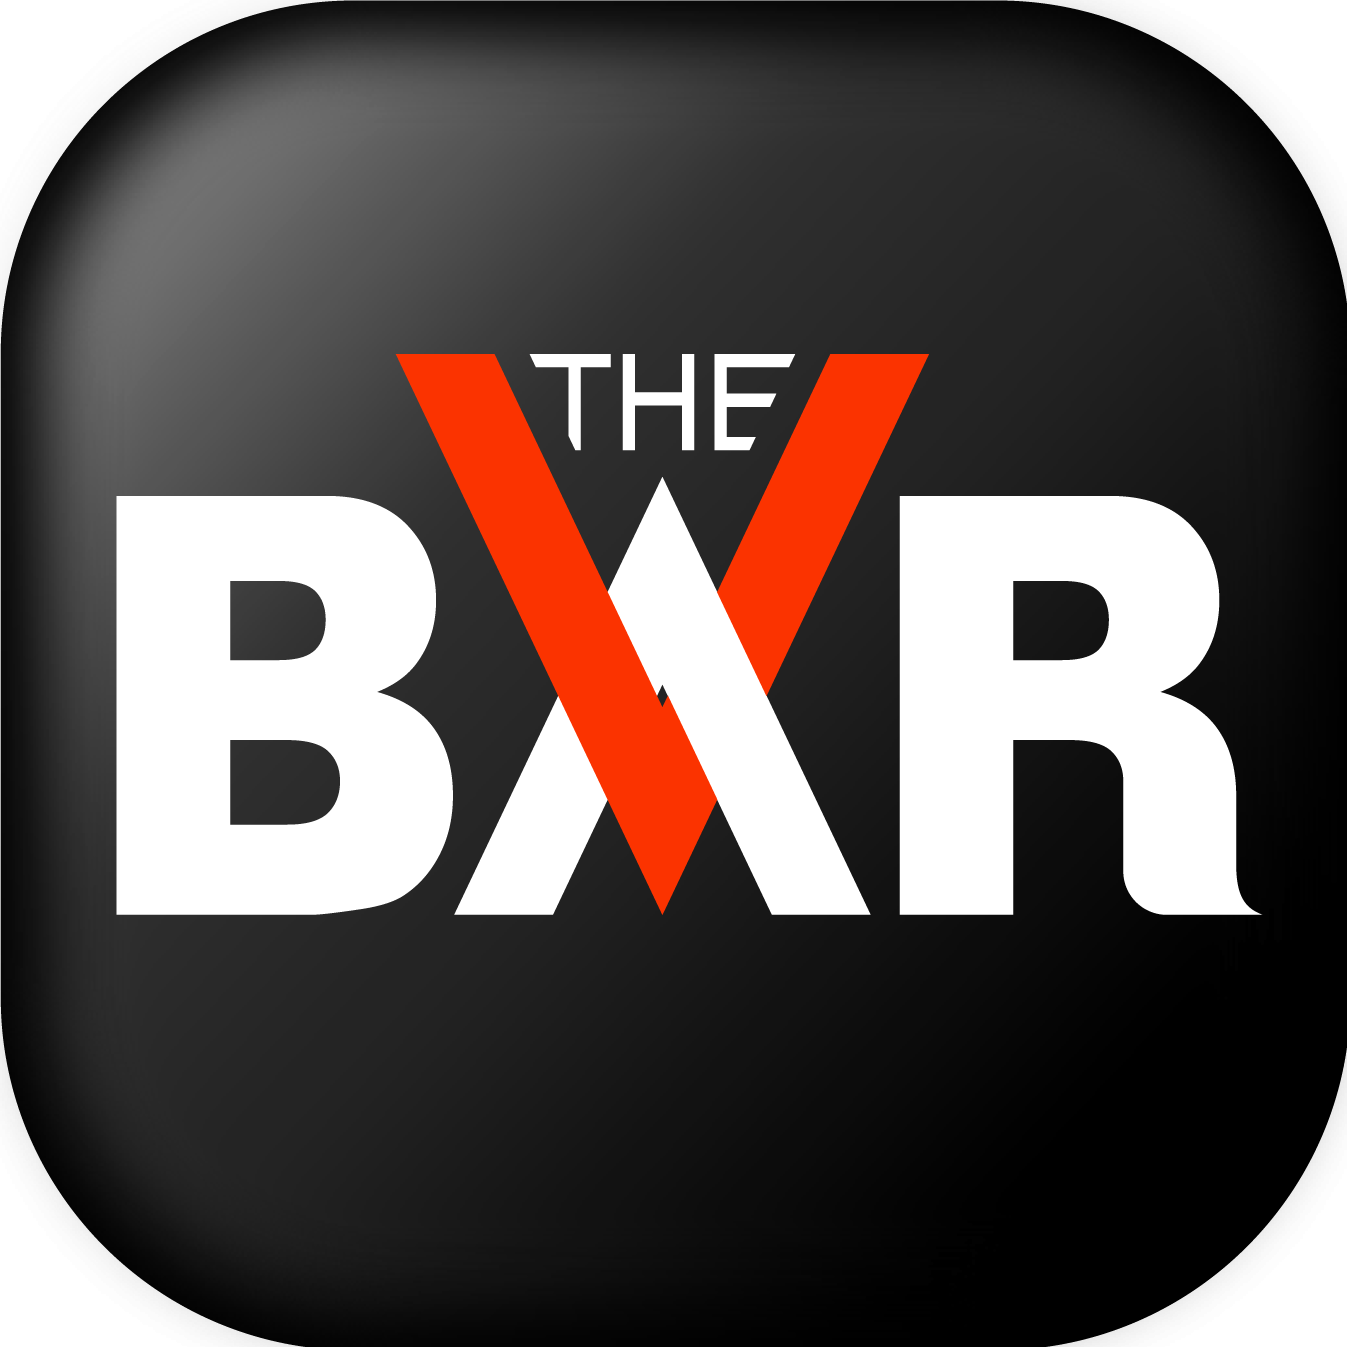 The Virtual Bar